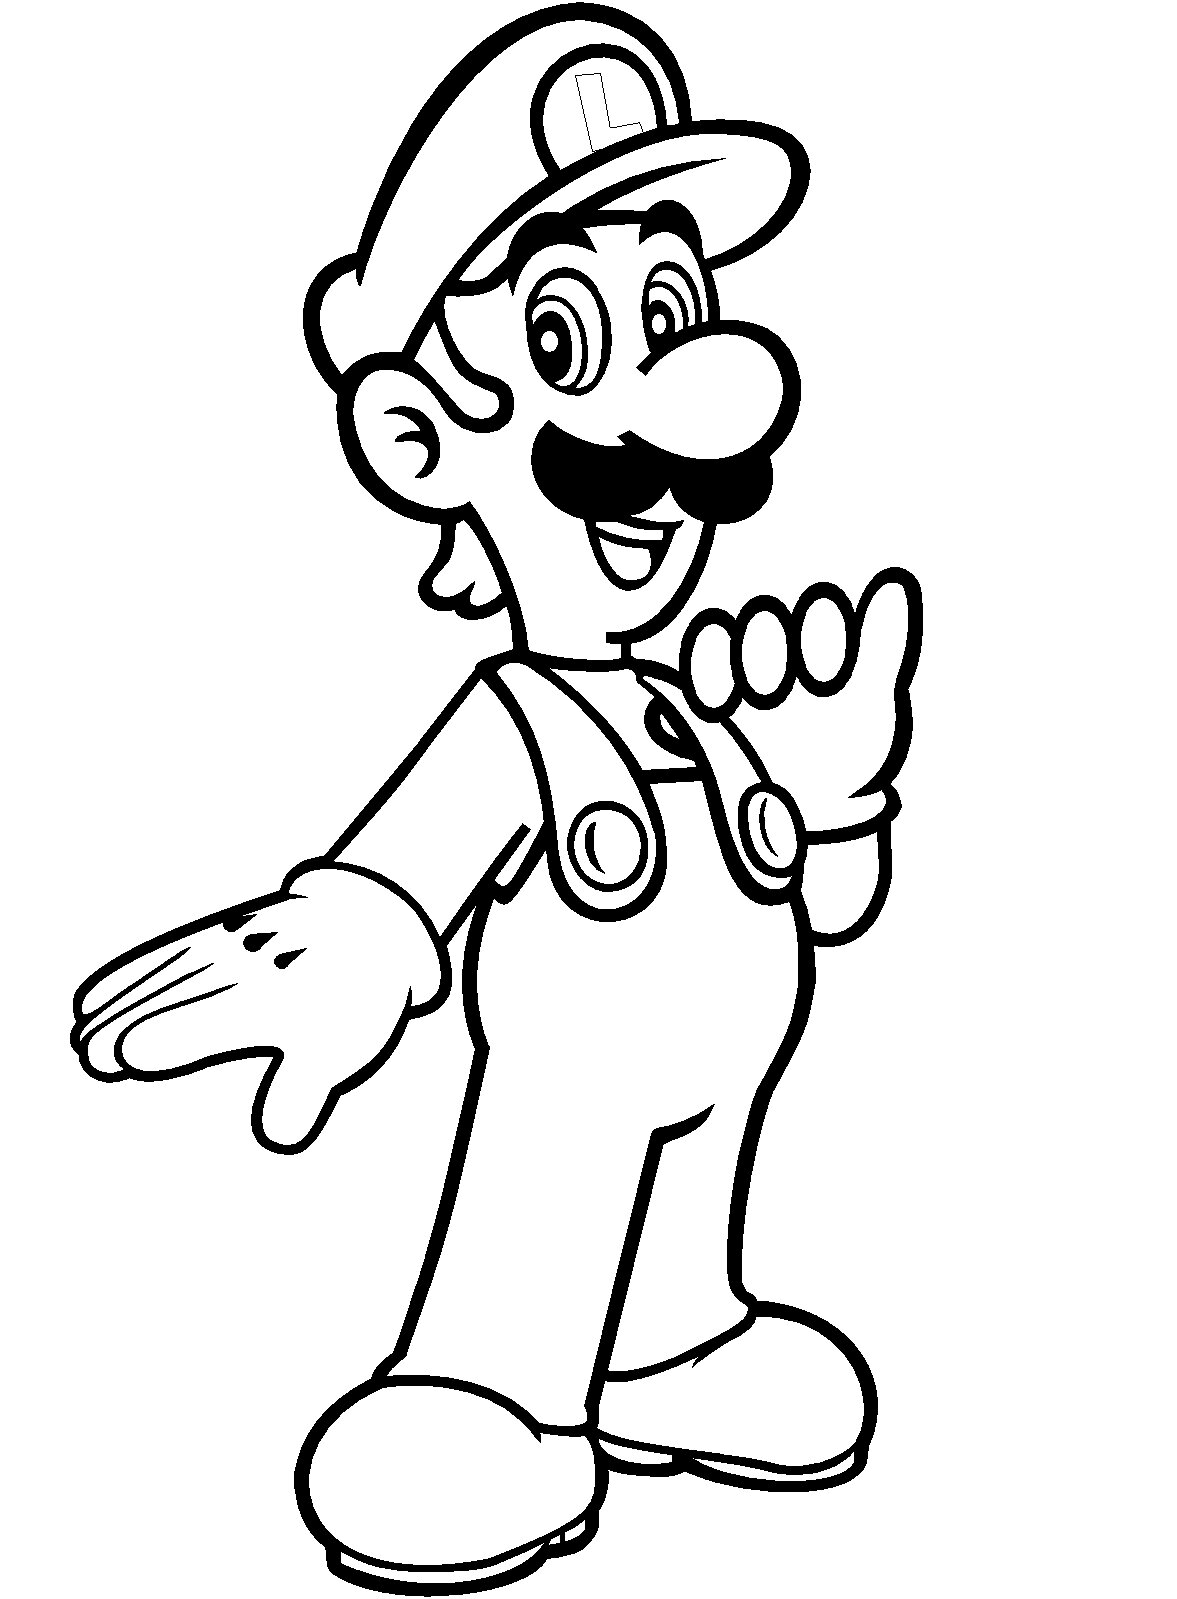 Luigi from Super Mario Bros Coloring Page